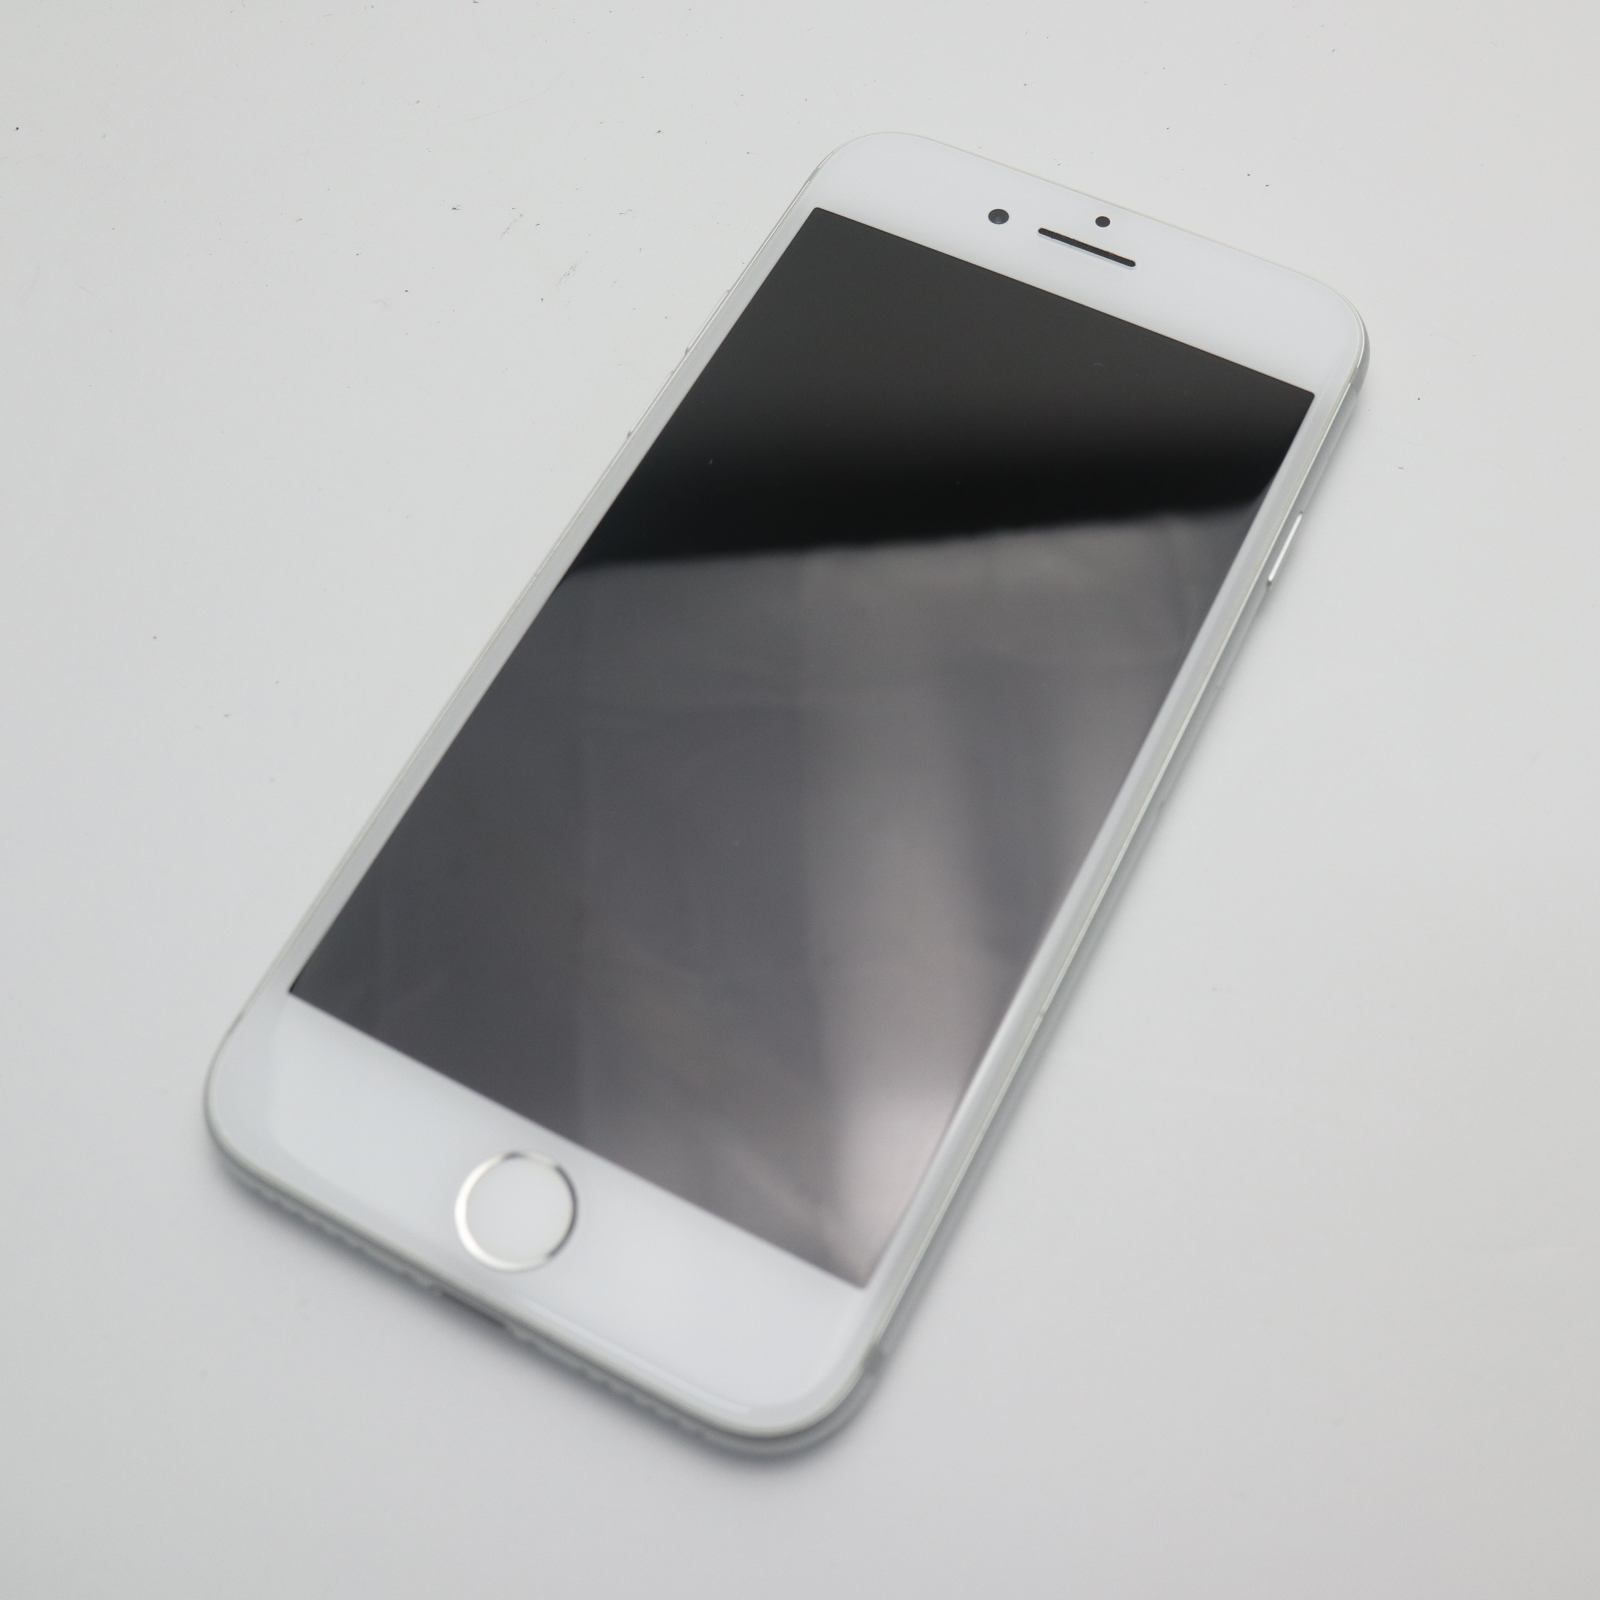 新品同様 SIMフリー iPhone7 32GB シルバー 即日発送 スマホ apple